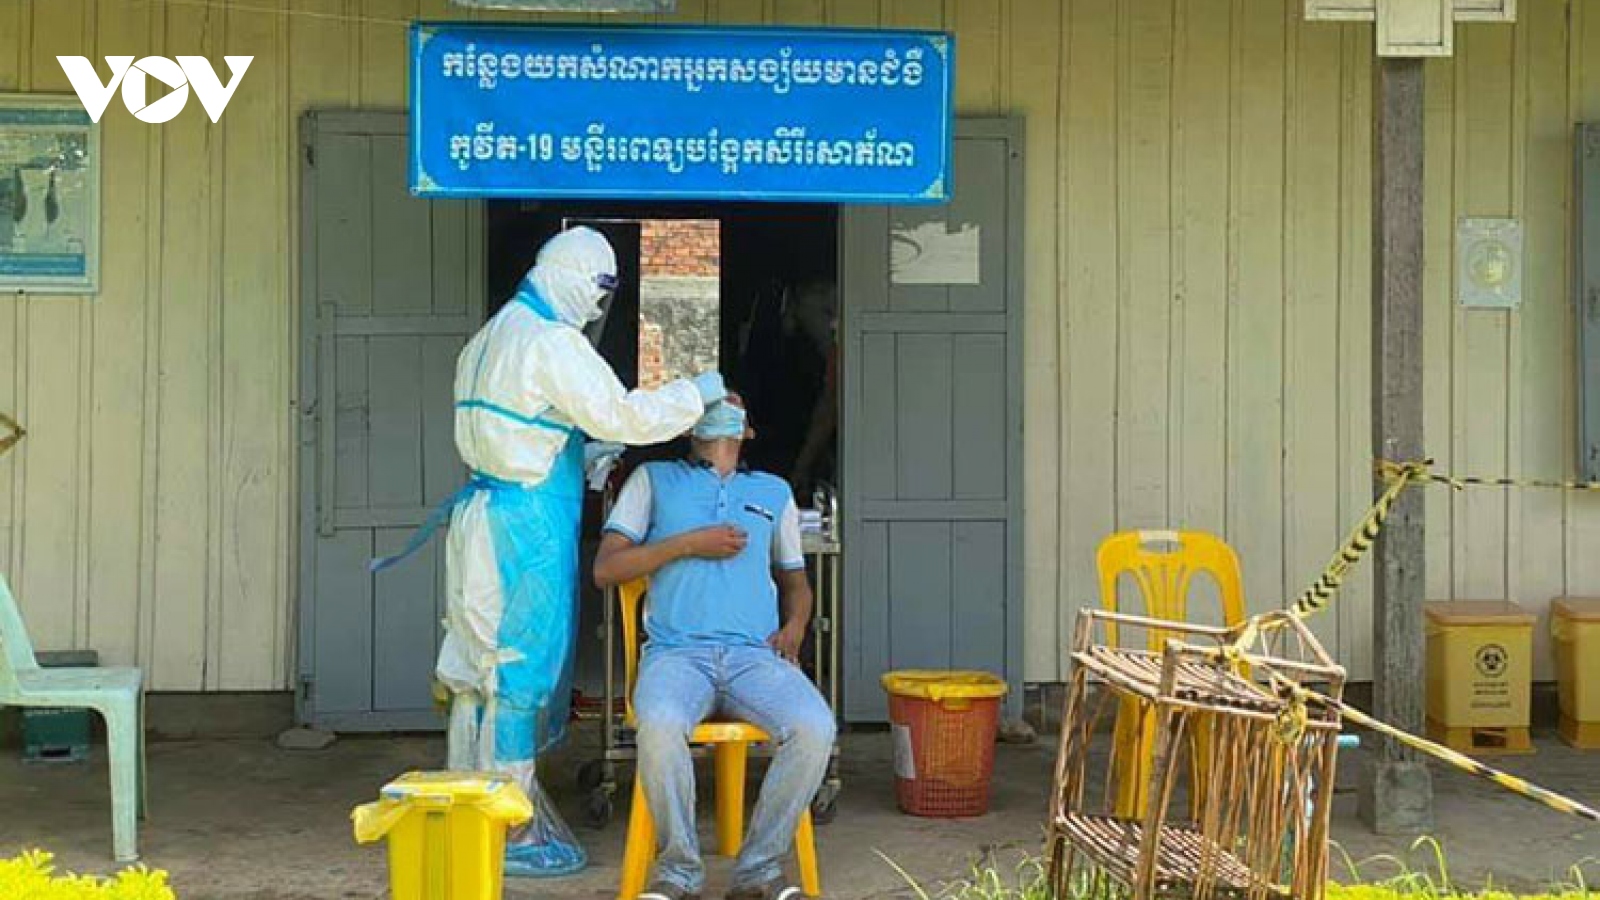 Bộ y tế Campuchia cho phép các khách sạn chăm sóc, điều trị bệnh nhân Covid-19 nhẹ